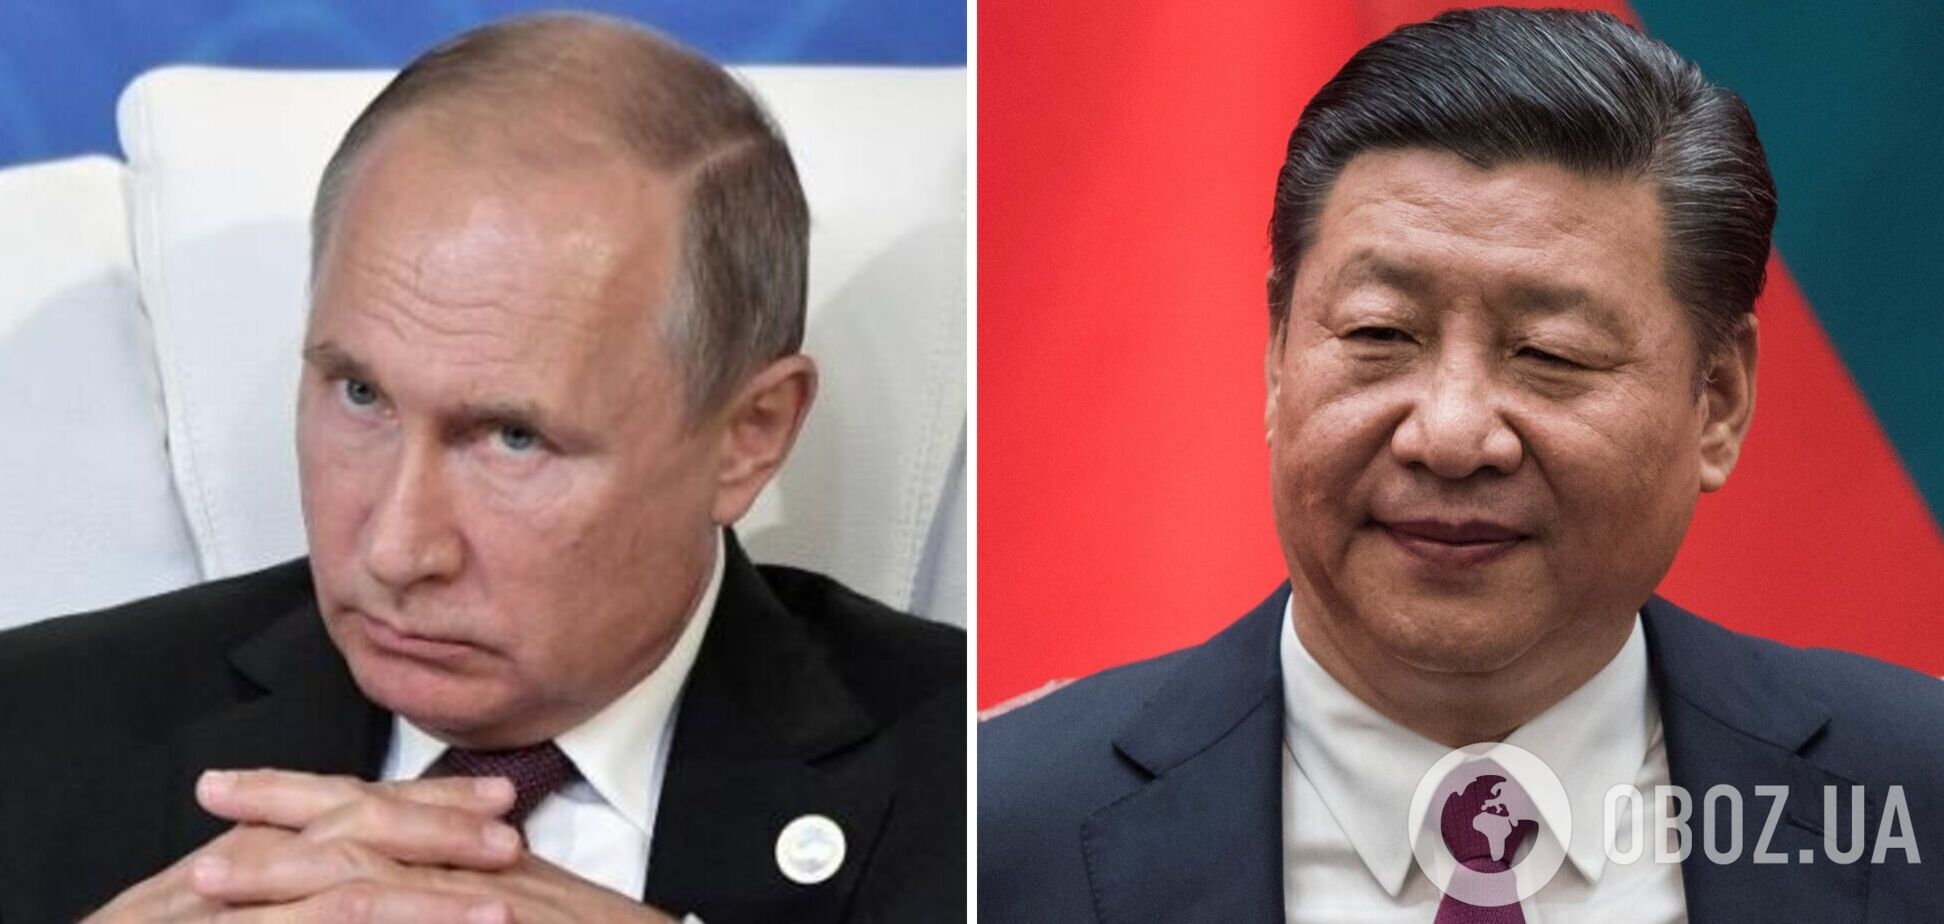 Китай поставляет России форму и амуницию для армии, но поставок вооружения нет, — китаевед Коваль